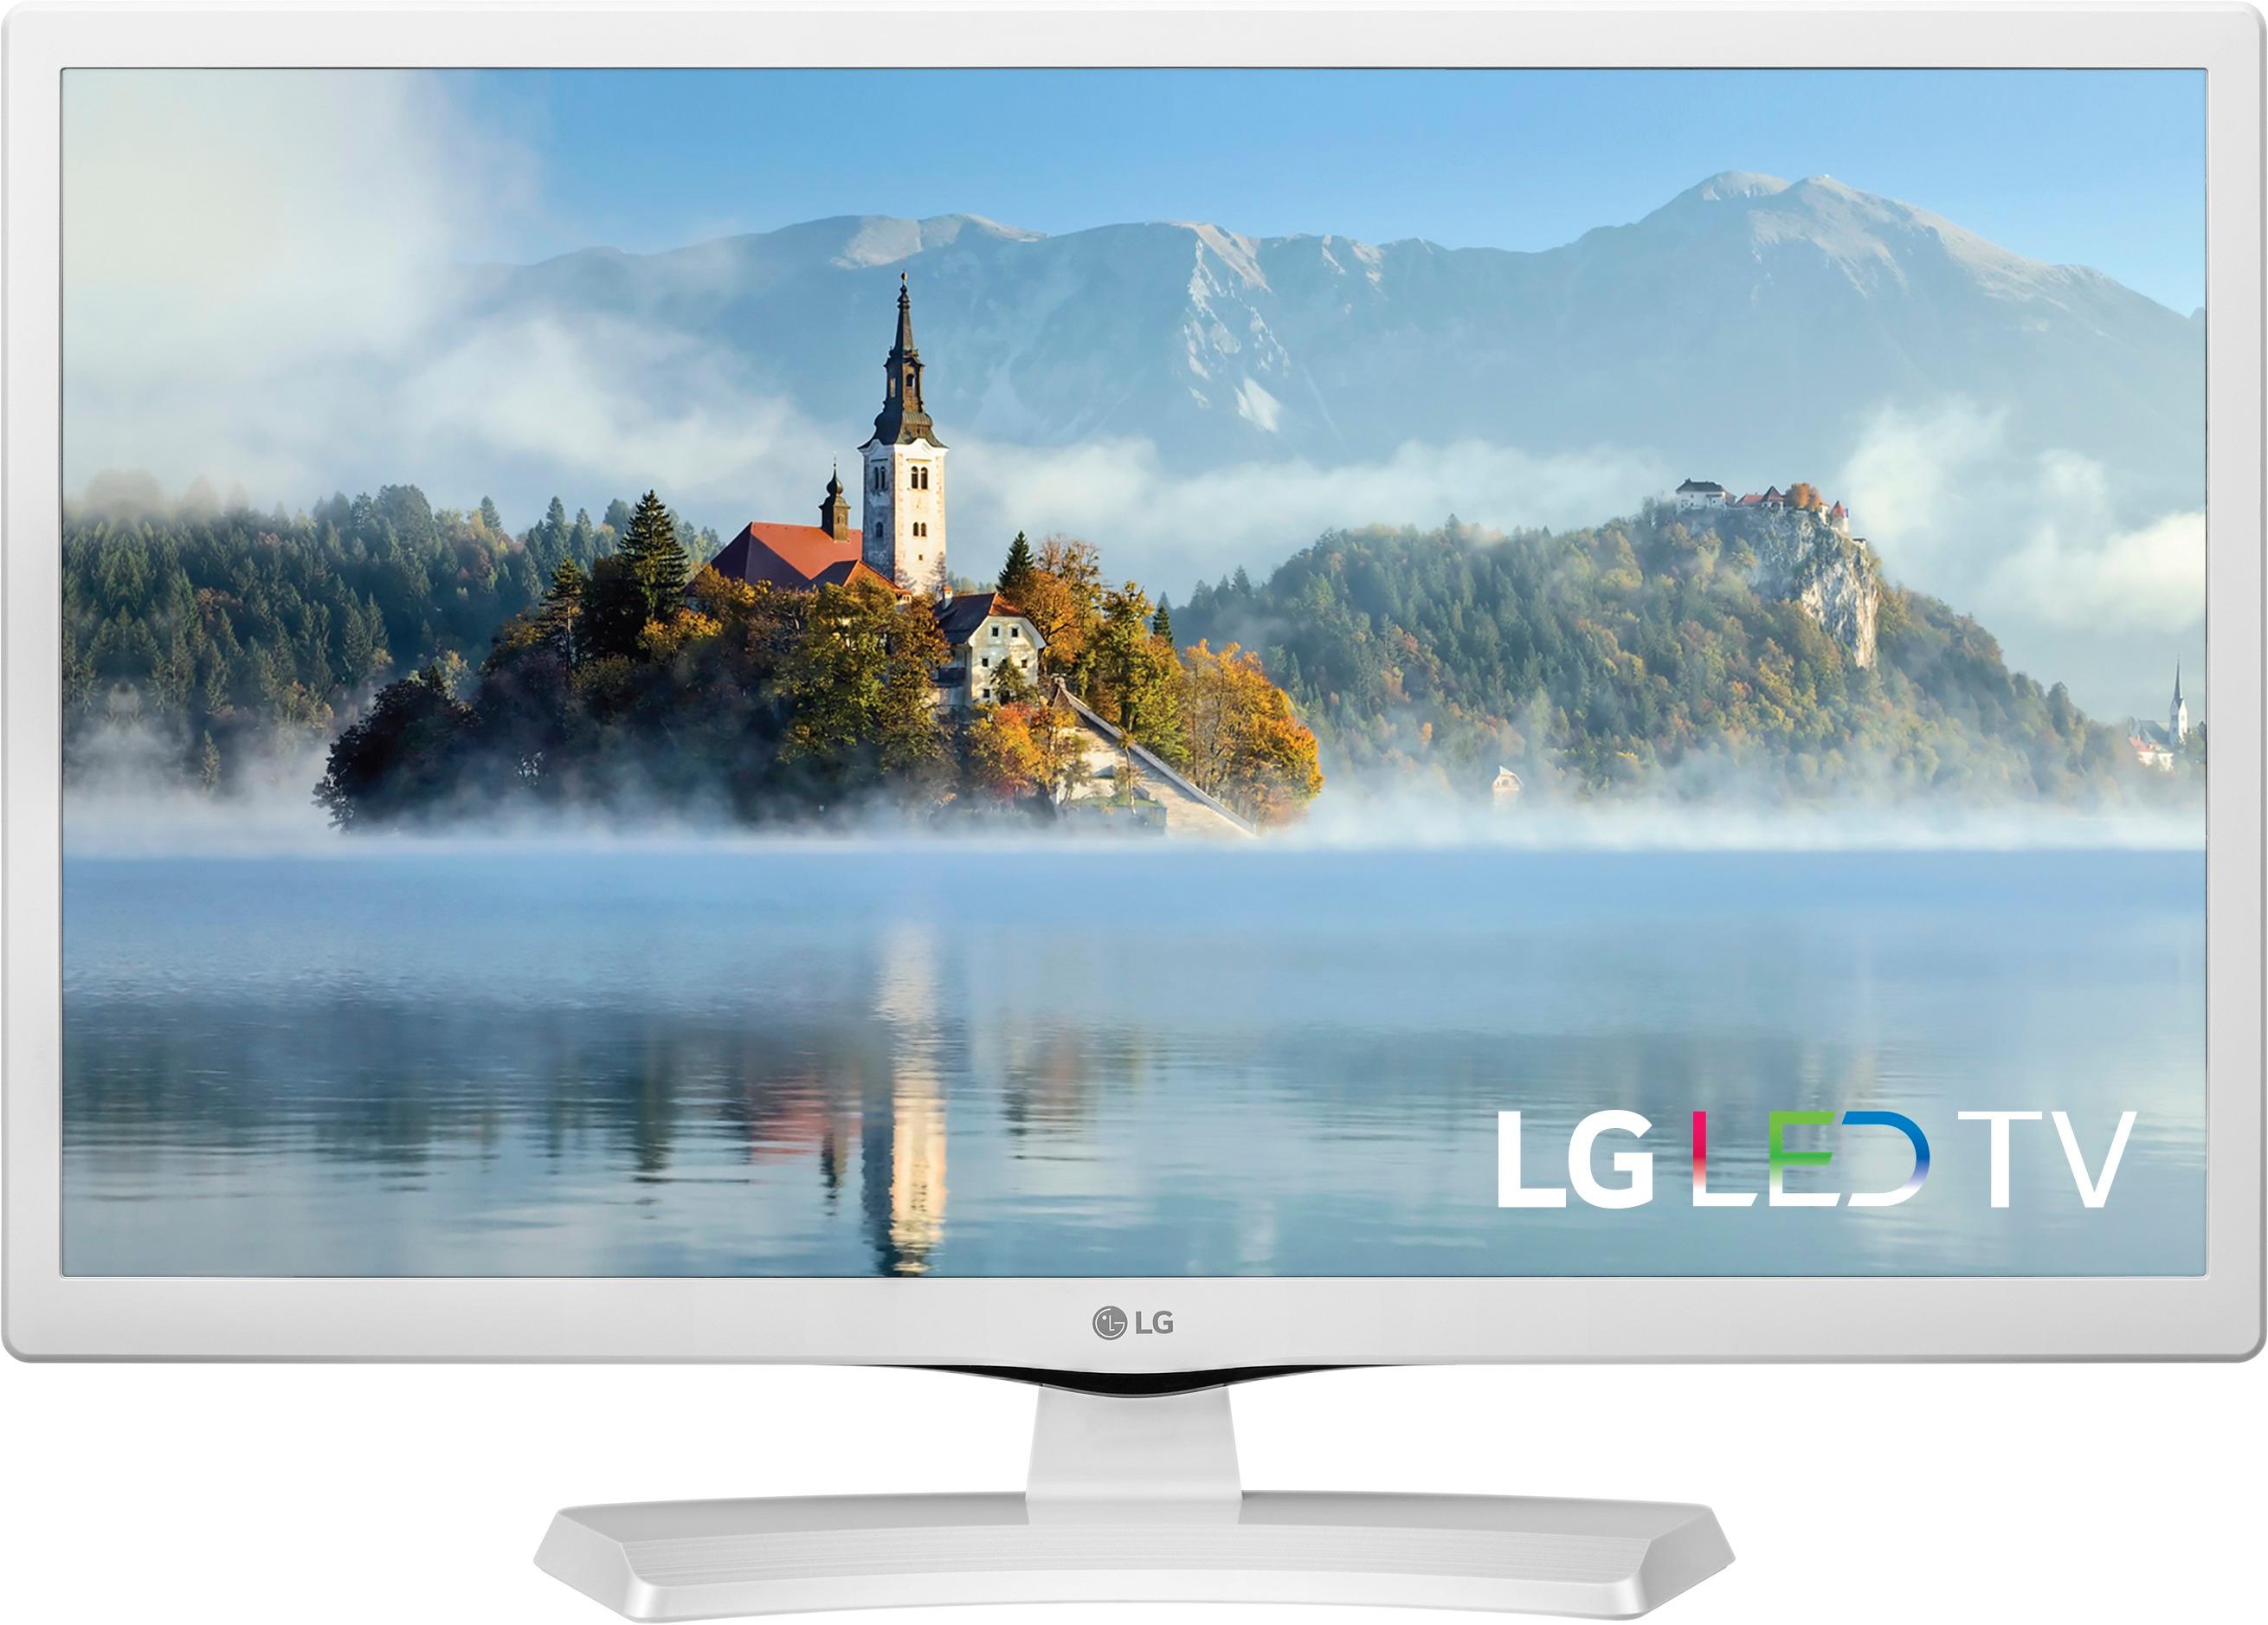 afgår kaustisk efterklang LG 24" Class LED 720p Smart HDTV 24LJ4840-WU - Best Buy